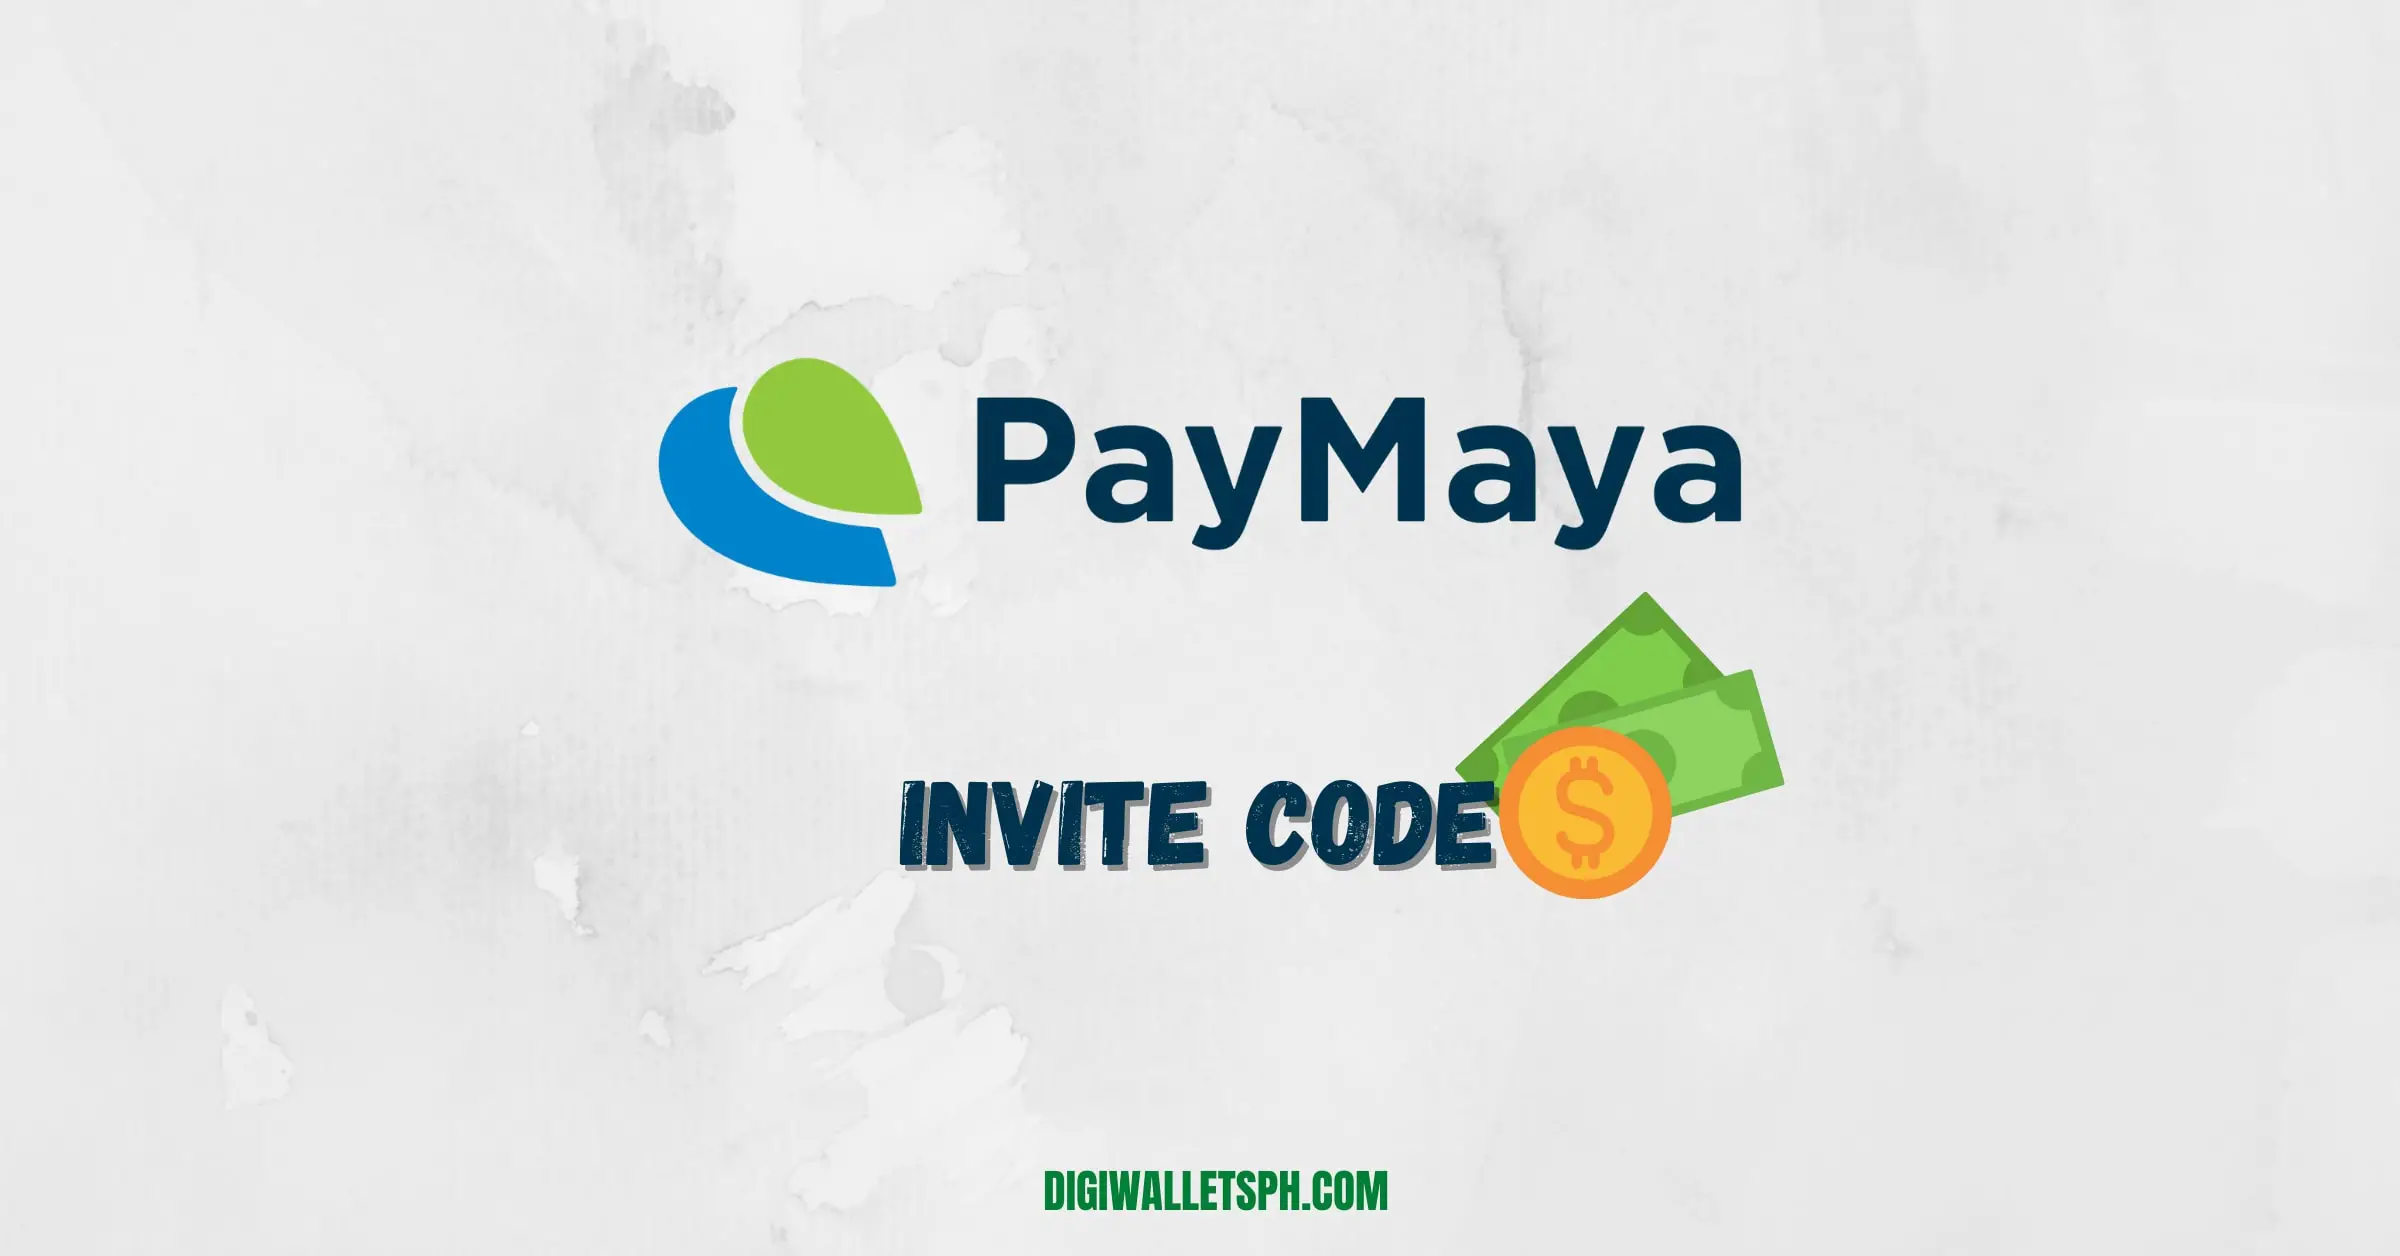 Paymaya invite code